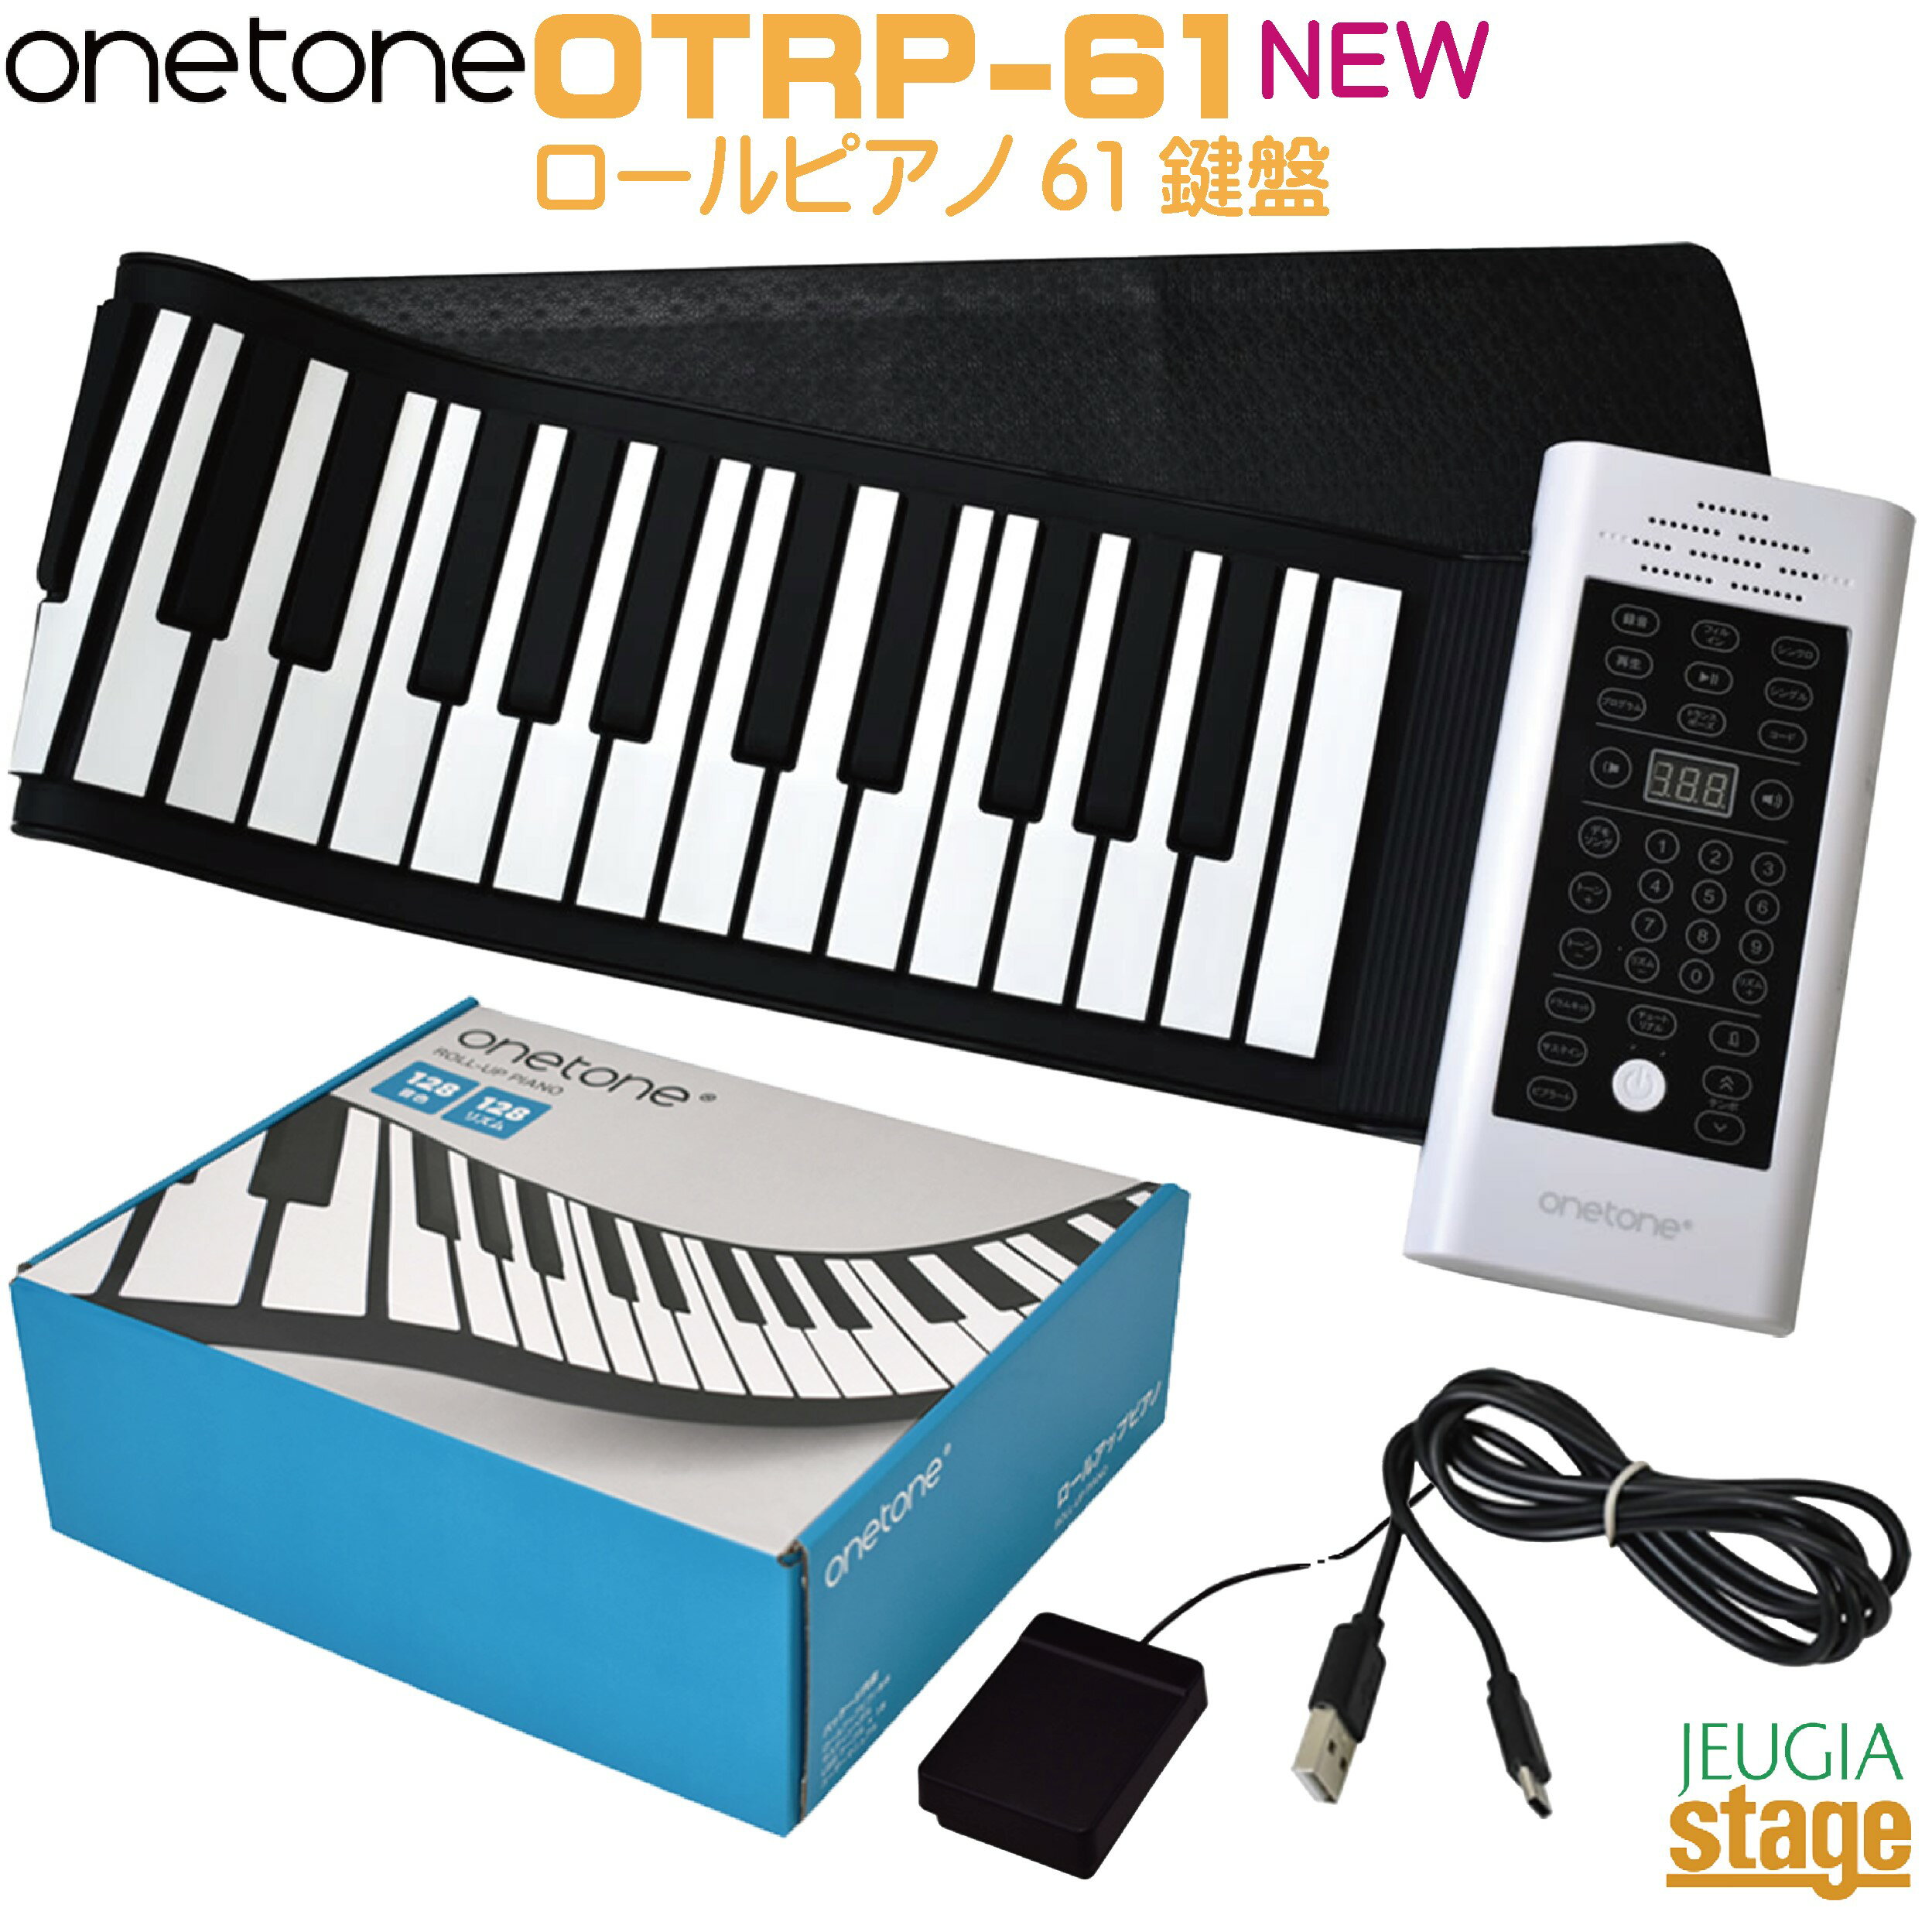 【OTKP-49(49鍵盤) 購入をお考えの方はこちら！】　 【OTKP-88(88鍵盤) 購入をお考えの方はこちら！】　 OTRP-61 ロールピアノ 収納・持ち運びに便利! 鍵盤がクルクル巻けるロールアップピアノ♪ スピーカー内蔵、充電池駆動なので場所を選ばずどこでもプレイ可能。 お子様から大人の方まで気軽に弾けるタッチ式のピアノです。 ●ピアノ発表会やバンドでのライブ直前の控え室ウォーミングアップに ●旅行や出張など外出先での作曲・練習に ●お子様の教育・音育ツールとして 気軽に弾けるロールピアノ スピーカー内蔵、充電池駆動なので場所を選ばすどこでもプレイ可能。ヘッドフォンを装着すればスピーカーはミュートされ、キーボードのように打鍵音もしないため、深夜の練習も可能です。お子様から大人の方まで気軽に弾けるタッチ式ピアノです。 クルクル巻いてコンパクトに OTRP シリーズは、鍵盤をクルクル巻くことができ、収納・持ち運びに便利な“ロールピアノ”です。スピーカー内蔵で充電池駆動なので、場所を選ばずどこでもプレイ可能。ピアノ発表会直前の控室でのウォーミングアップや、旅行や出張などの外出先での作曲・練習など、様々なシーンでお楽しみいただけます。 日本語パネル＆日本語取説 英語表記のものが多いロールピアノですが、OTRP シリーズは日本語表記のパネルとなっております。付属の日本語取扱説明書とあわせて操作方法をご確認いただけますので、年齢や経験を問わずどなたでも演奏いただけます。 黒鍵に高さをもたせて本格的に 白鍵盤と黒鍵盤には段差が付けられており、より本物のピアノに近い感覚で演奏をお楽しみいただける設計に。 スピーカー搭載＆ヘッドフォンが接続可能 スピーカーを本体に搭載しておりますので、迫力のサウンドをお楽しみいただけます。また、ヘッドフォン端子にヘッドフォンを接続すれば、夜間でも演奏をお楽しみいただけます。※ ヘッドフォン接続時はスピーカーからは音がでません 触り心地の良いシリコン鍵盤 しっかりと指を立てて押し込んで演奏するため、打感の習得に役立ちます。 61&88鍵盤は豊富な音色数128でデモソングも収録！ しかもサスティンペダル付き！ 沢山の音色とサスティンペダル付きで演奏により音色変化楽しめます。 ・鍵盤数： 61 ・トーン数： 128 ・リズム： 128 ・デモソング： 6 ・出力： 3W ・サイズ： 1,010(W) × 230(D) × 30(H)mm ・重量： 約1,170g ・バッテリー： 3.7V 1,100mA ・充電時間： 約3時間 ・駆動時間： 約5～6時間 ・サスティンペダル対応 ※商品画像はサンプルです。 ★掲載の商品は店頭や他のECサイトでも並行して販売しております。在庫情報の更新には最大限の努力をしておりますが、ご注文が完了しましても売り切れでご用意できない場合がございます。 　また、お取り寄せ商品の場合、生産完了などの理由でご用意できない場合がございます。 　その際はご注文をキャンセルさせていただきますので、予めご了承くださいませ。 ★お届け先が北海道や沖縄、その他離島の場合、「送料無料」と表記の商品であっても別途中継料や送料を頂戴いたします。その際は改めてご連絡を差し上げますのでご了承ください。　